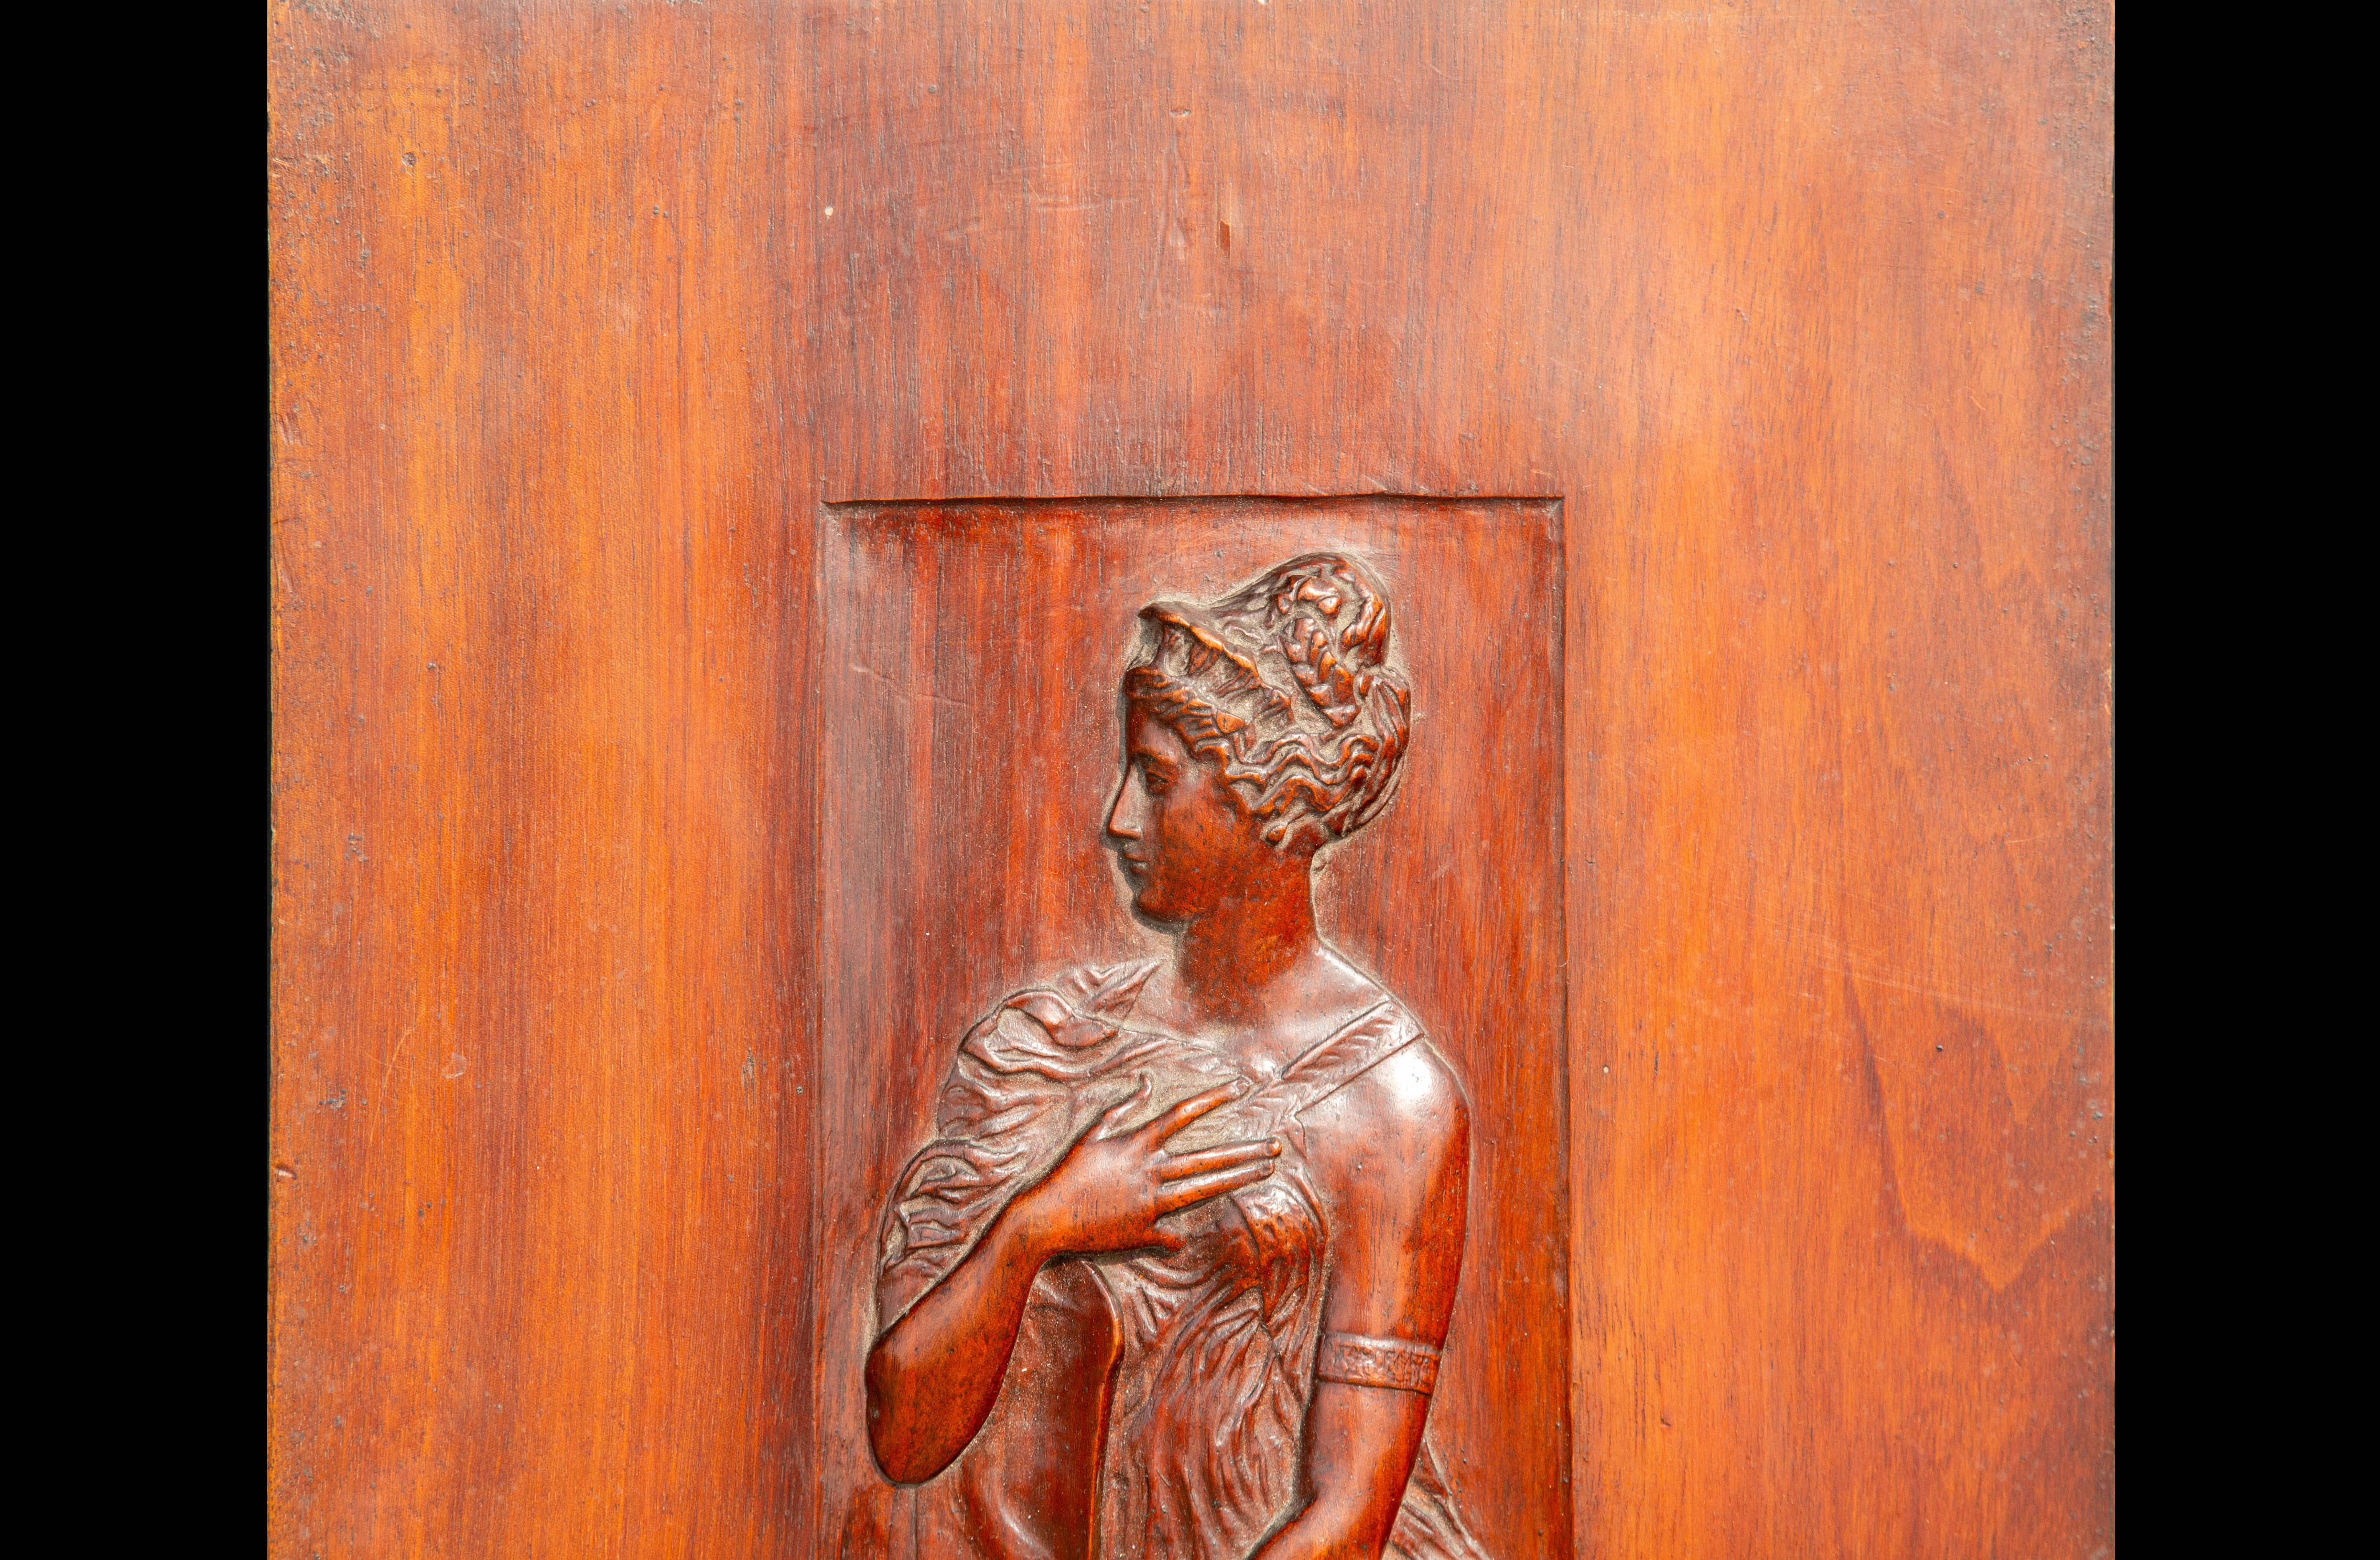 Panneau en bois sculpté du début du 20e siècle représentant une femme classique.